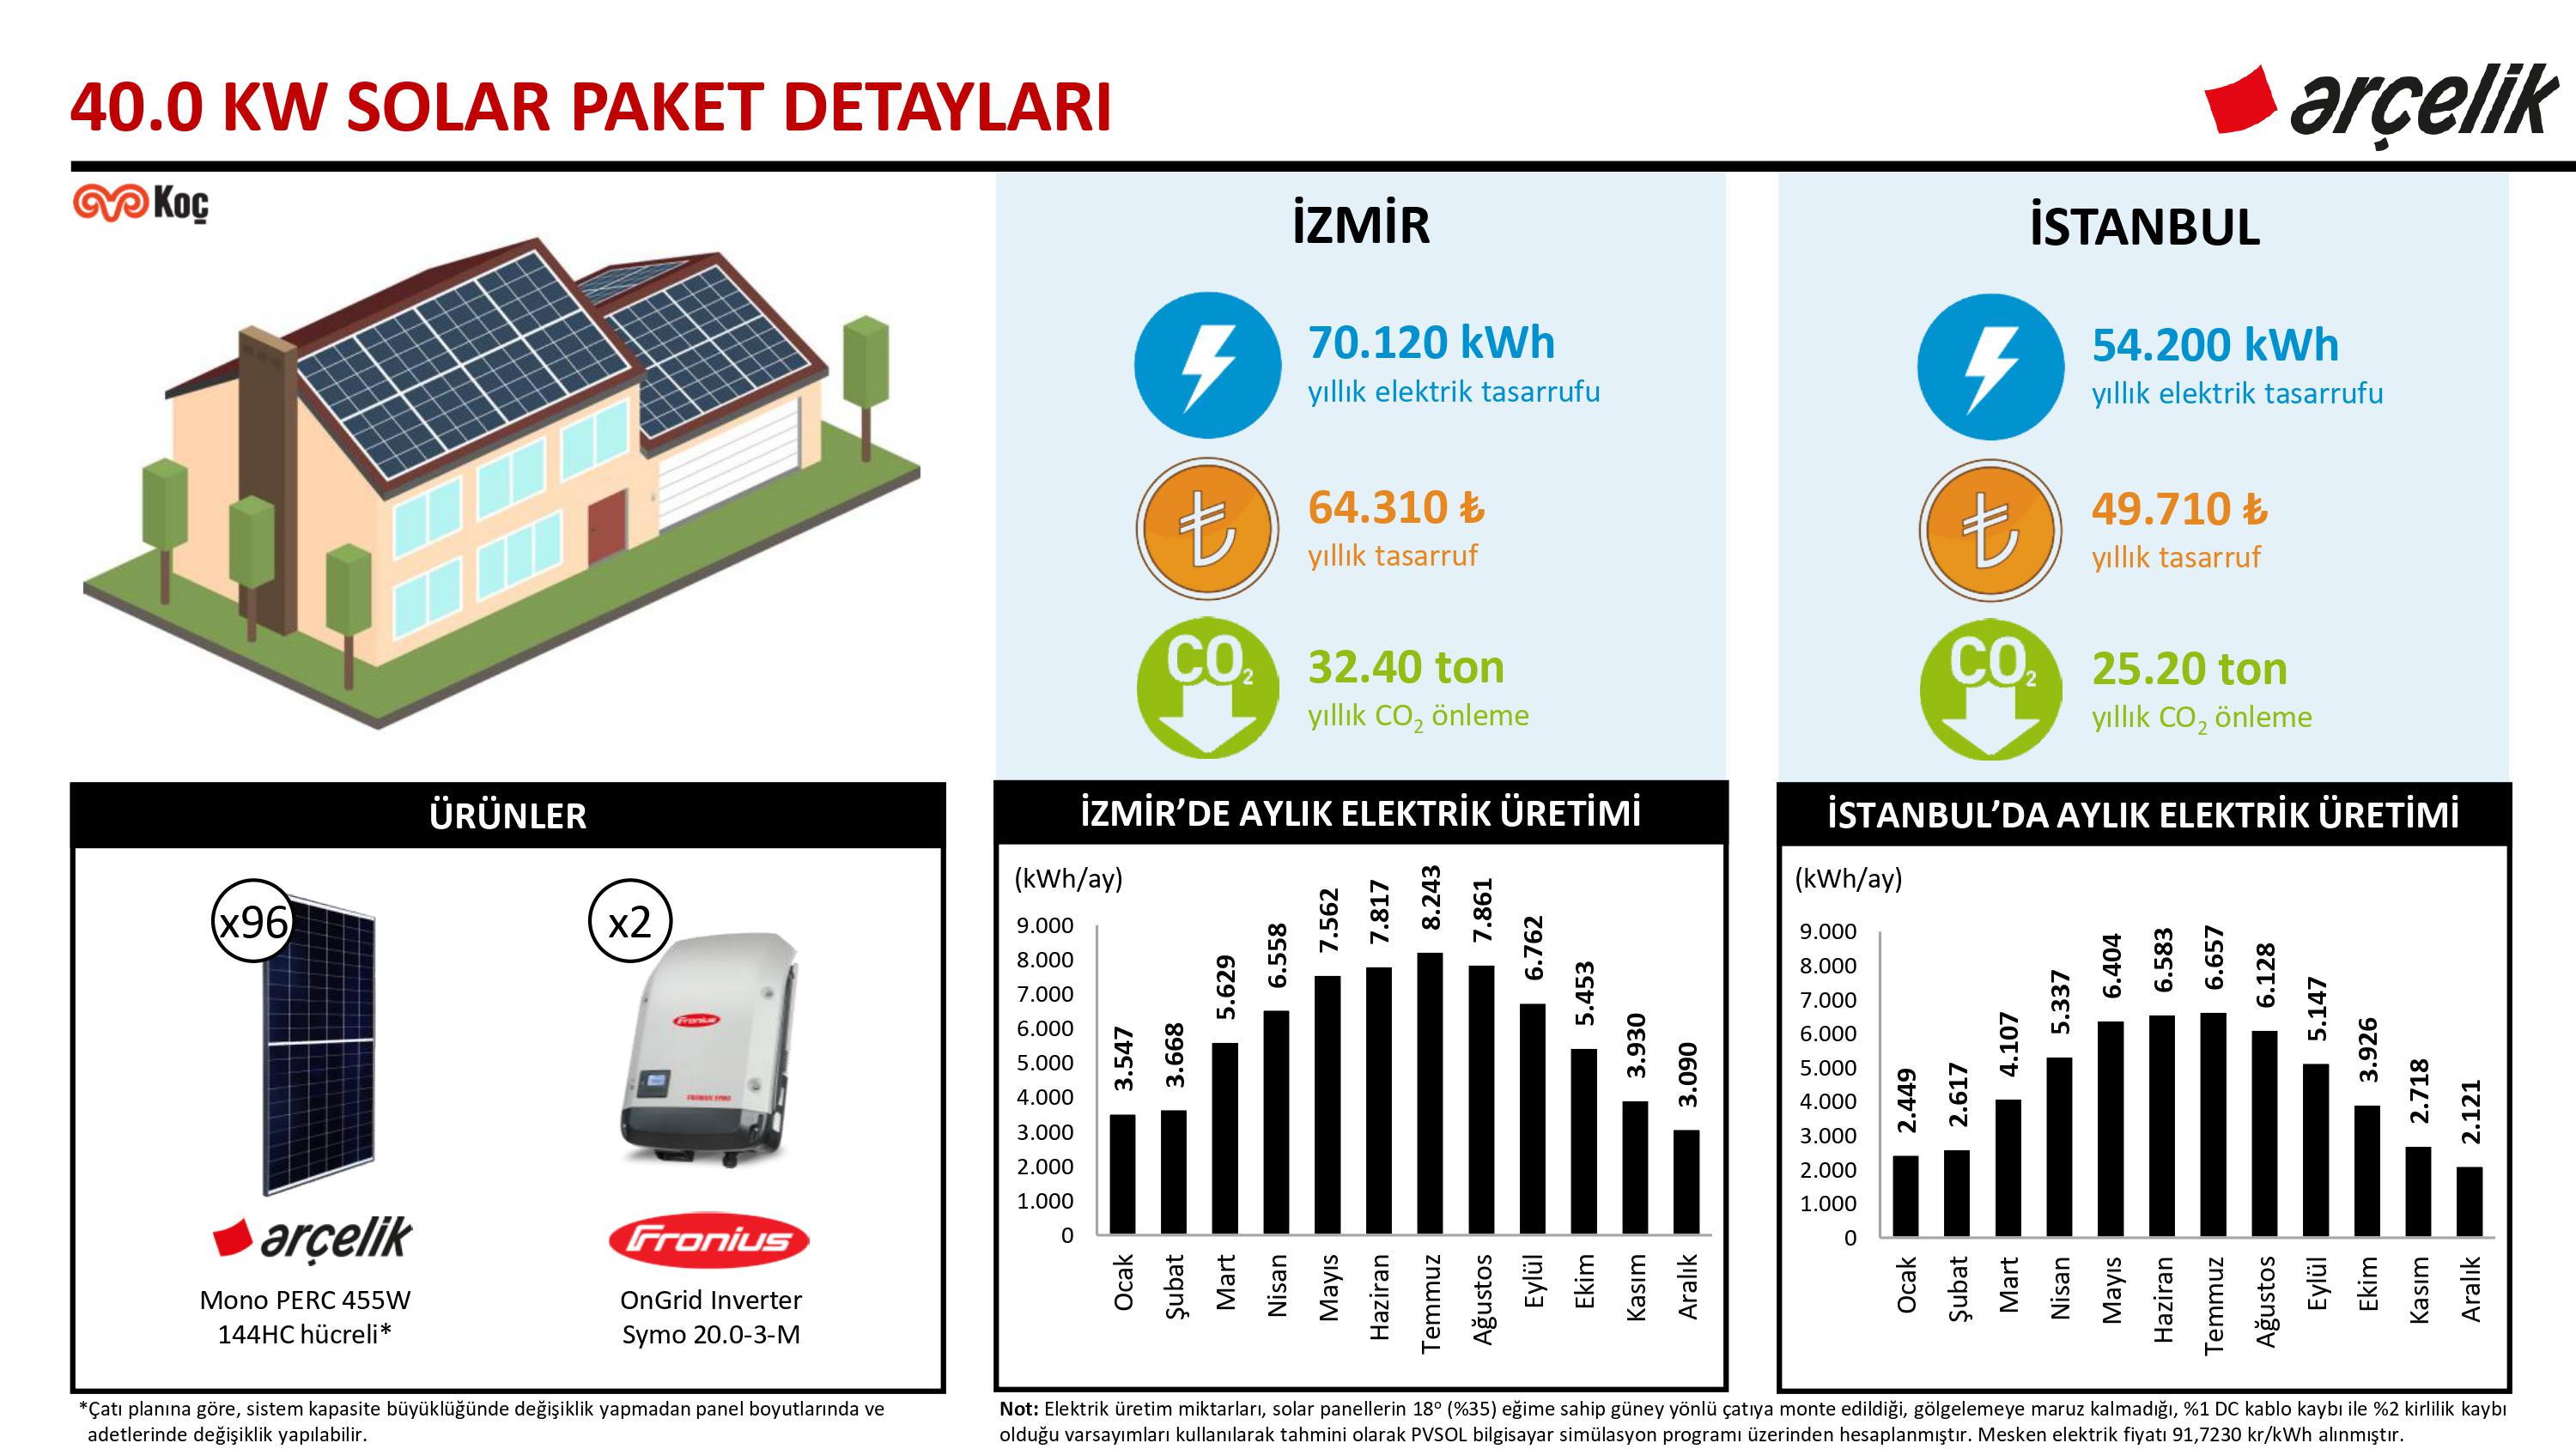 Arçelik 40.0 kW Solar Paket ve Yapı Kredi Leasing Detayları